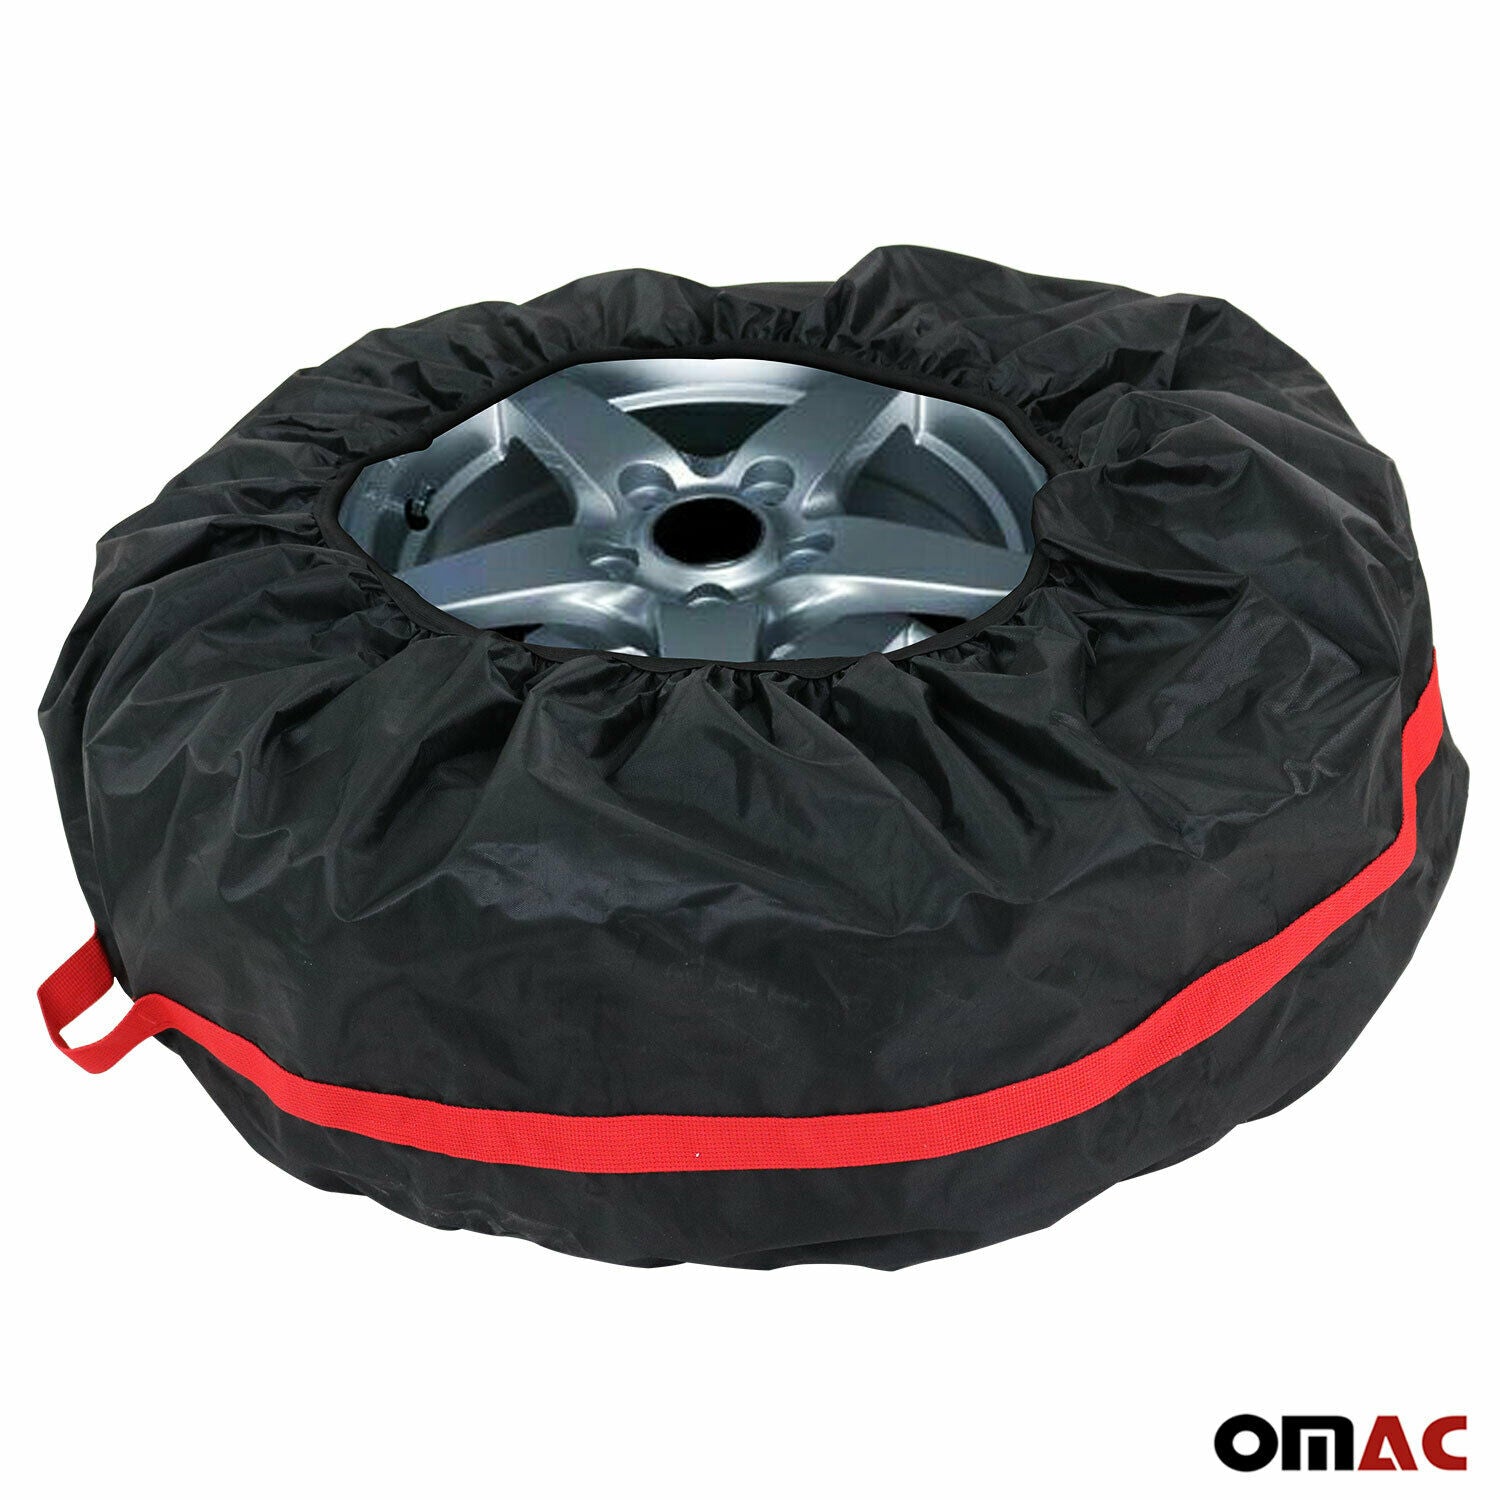 Formula 1 Reifentaschen-Set, Reifenschutzhülle, 4-teilig, wasserabweisend,  waschbar, schwarz-rot, für sauberen Transport und sichere Aufbewahrung :  : Auto & Motorrad